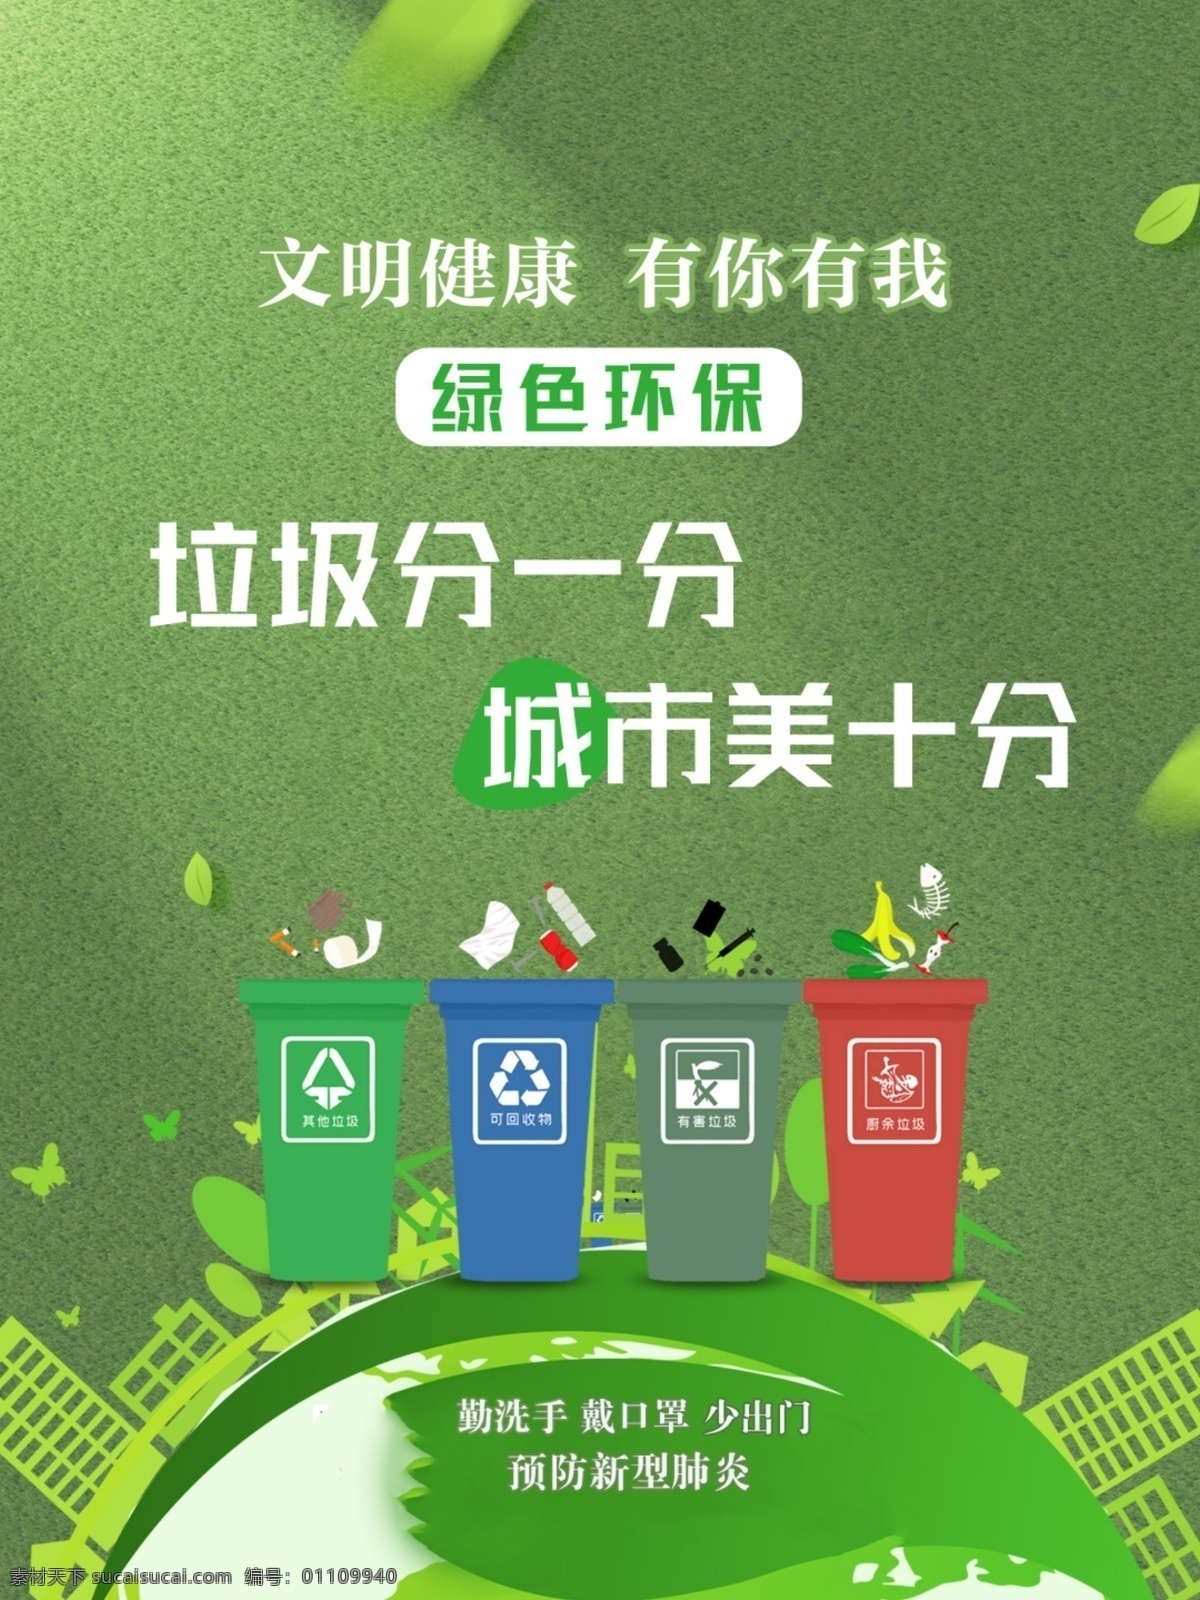 绿色环保 文明健康 有你有我 预防新型肺炎 少出门 戴口罩 勤洗手 web 界面设计 中文模板